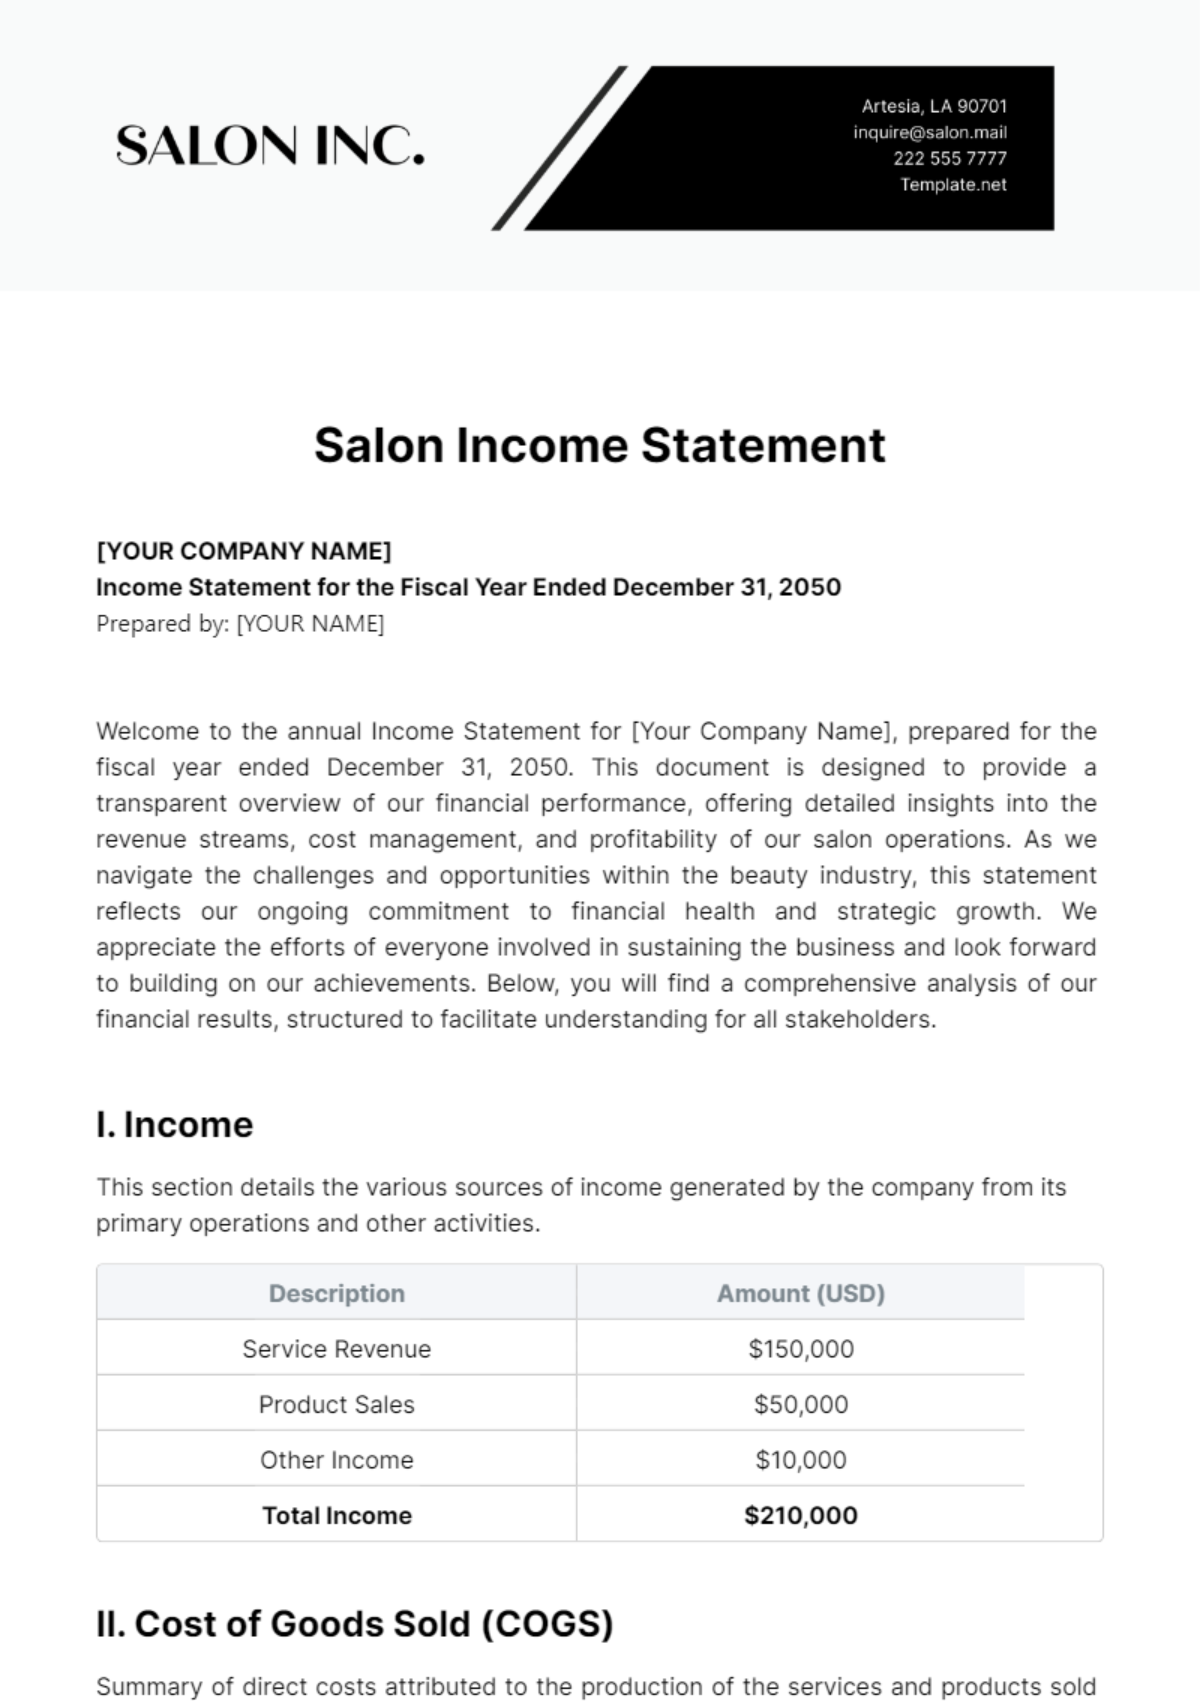 Salon Income Statement Template